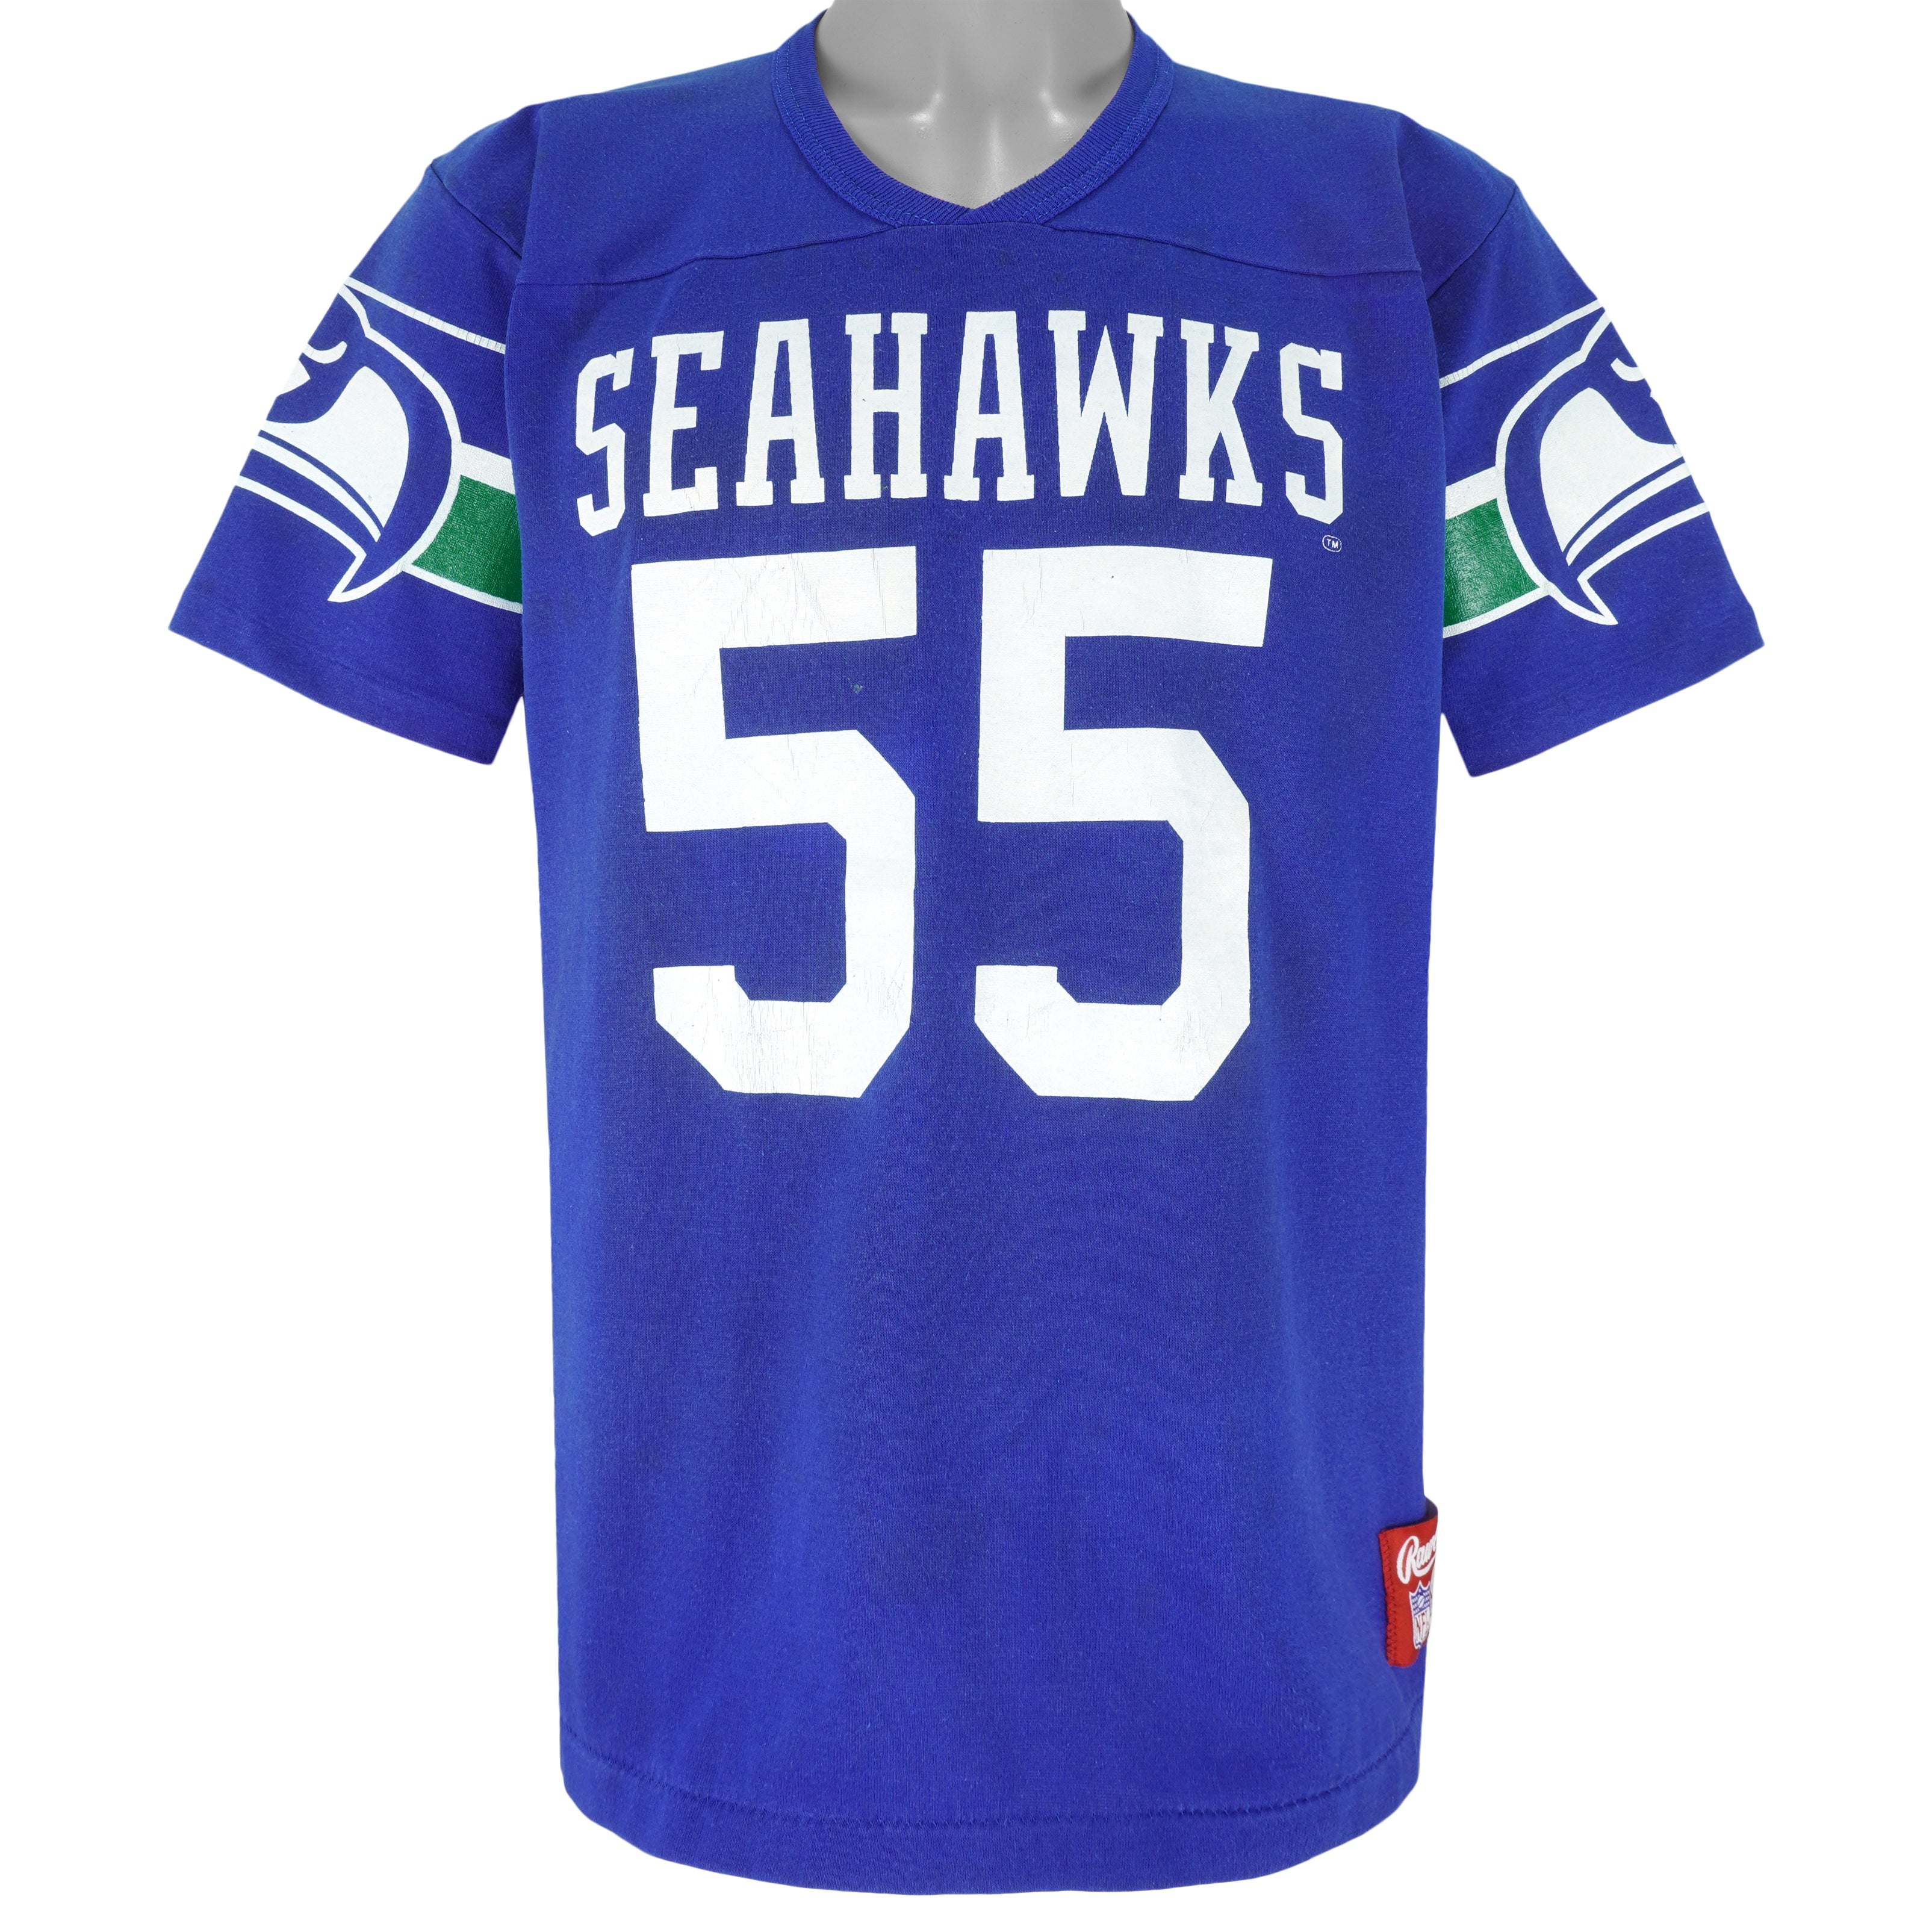 Seattle Seahawks NFL Locker Room Player Issued Football Pants